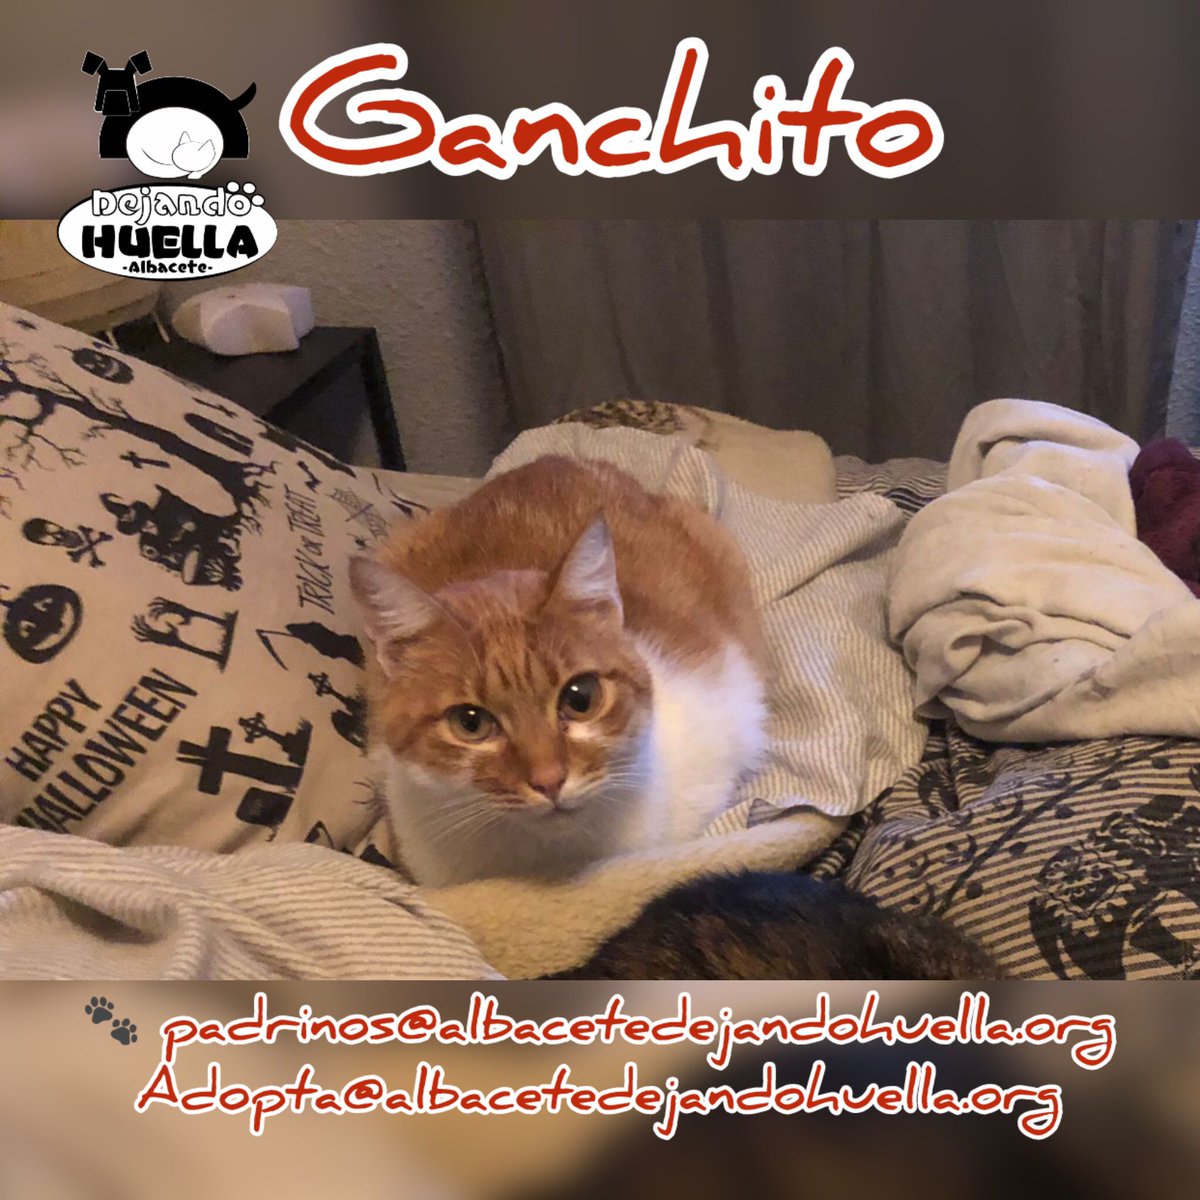 Ganchito lleva una vida de lo más entretenida. En su casa de acogida tiene que compartir sofá con sus hermanos de acogida y siempre están atentos al mejor lado del sofá. Ganchito es un gato muy cariñoso que lleva con nosotros muchos años.